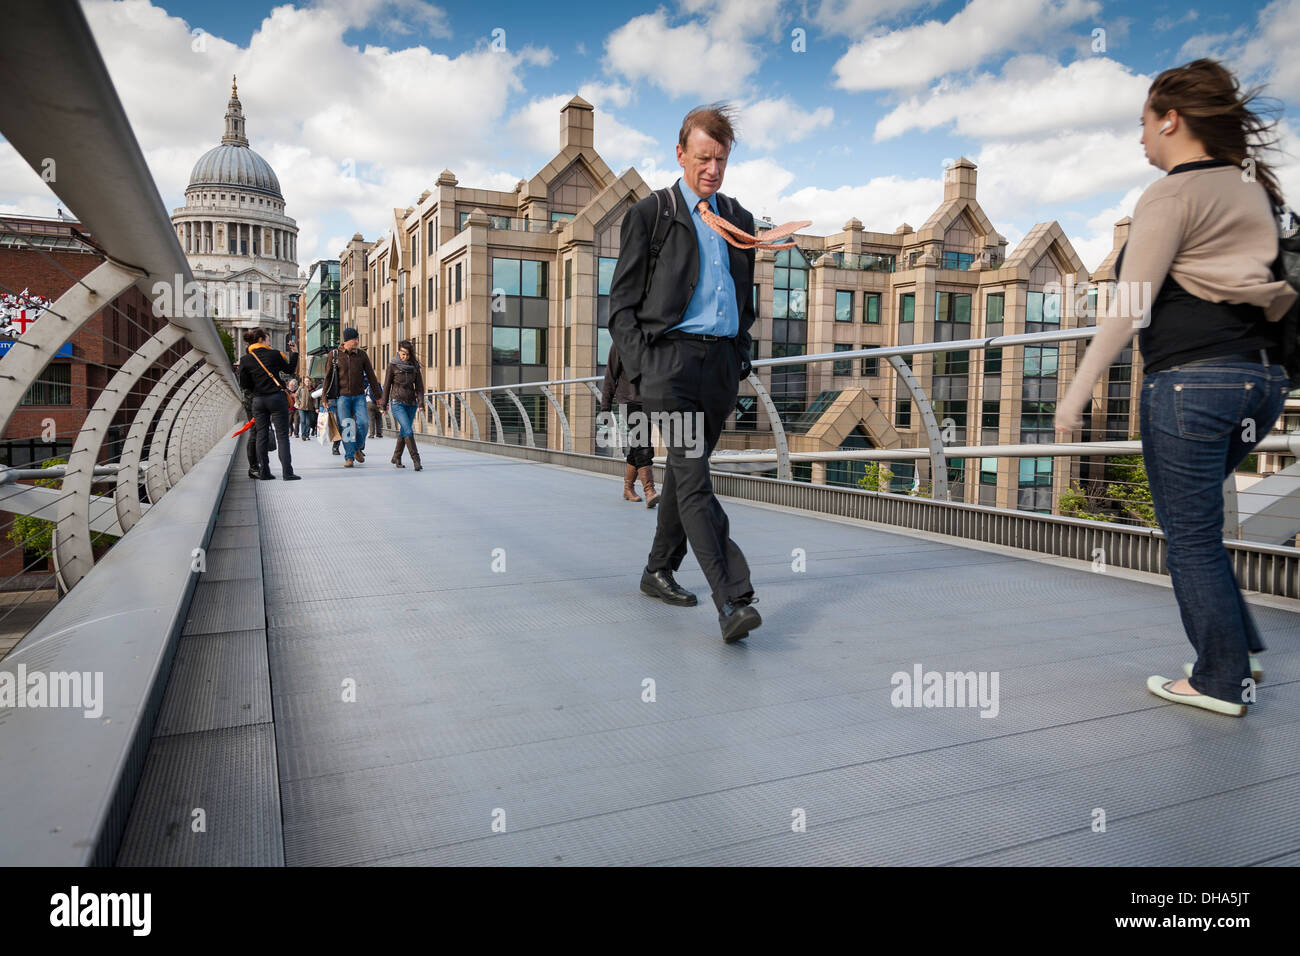 L'homme d'affaires avec des cordelettes qui souffle dans la brise, marche sur la passerelle du millénaire, à Londres, avec la cathédrale St Paul derrière. Banque D'Images